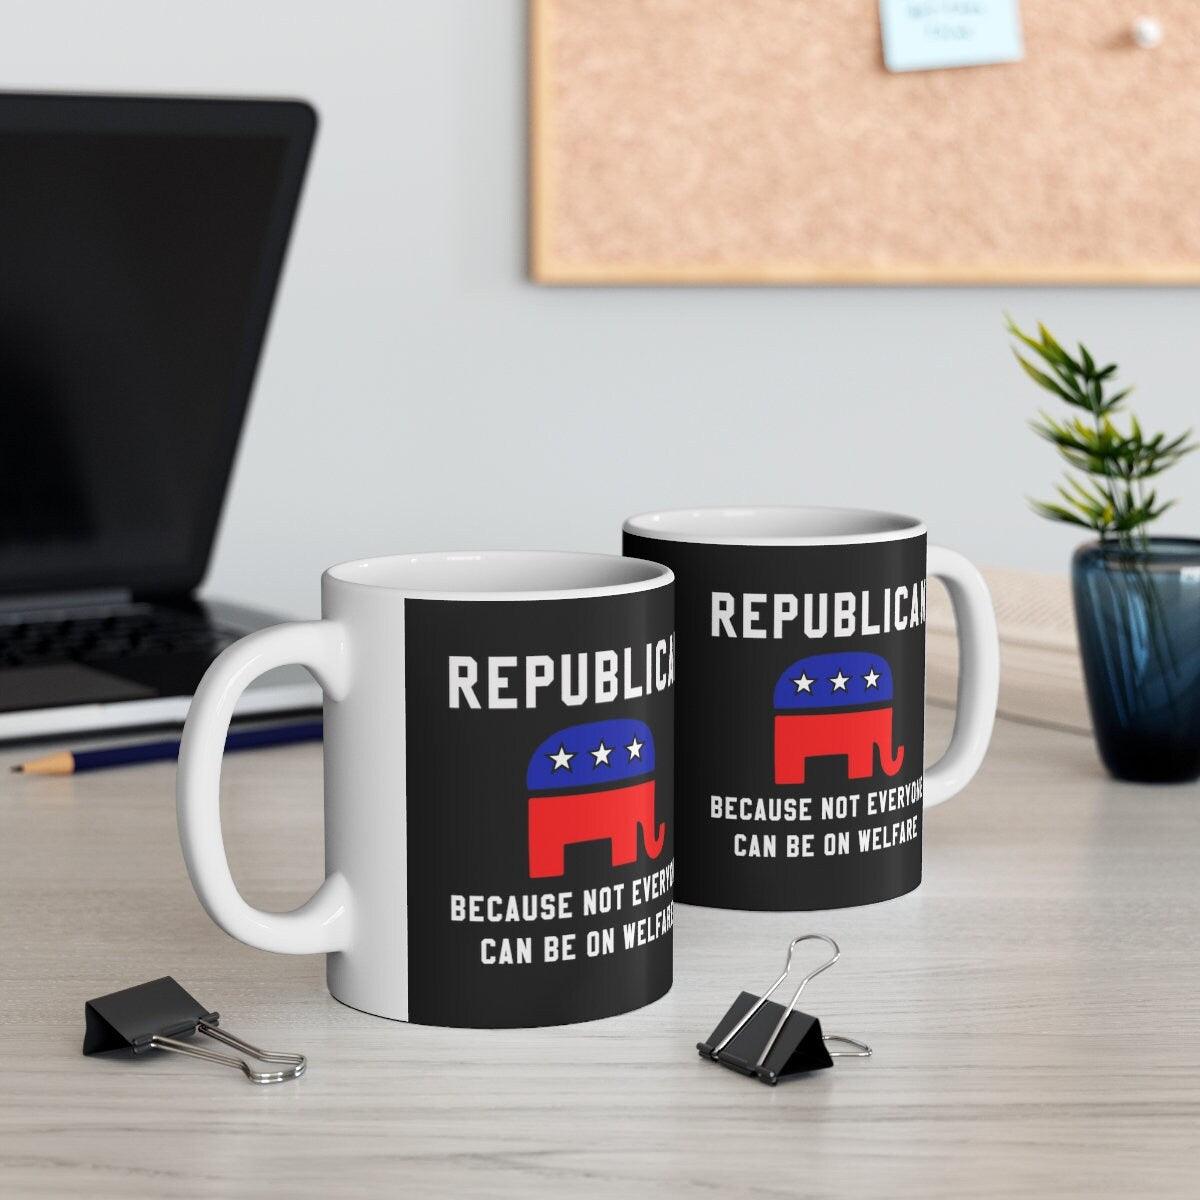 Ρεπουμπλικανός Κούπα καφέ, Ρεπουμπλικανικό δώρο, Πολιτική Κούπα, Ρεπουμπλικάνος Δεν μπορούν όλοι να είναι στο Welfare, Raised Republican, Elephant, Ceramic 11oz - plusminusco.com